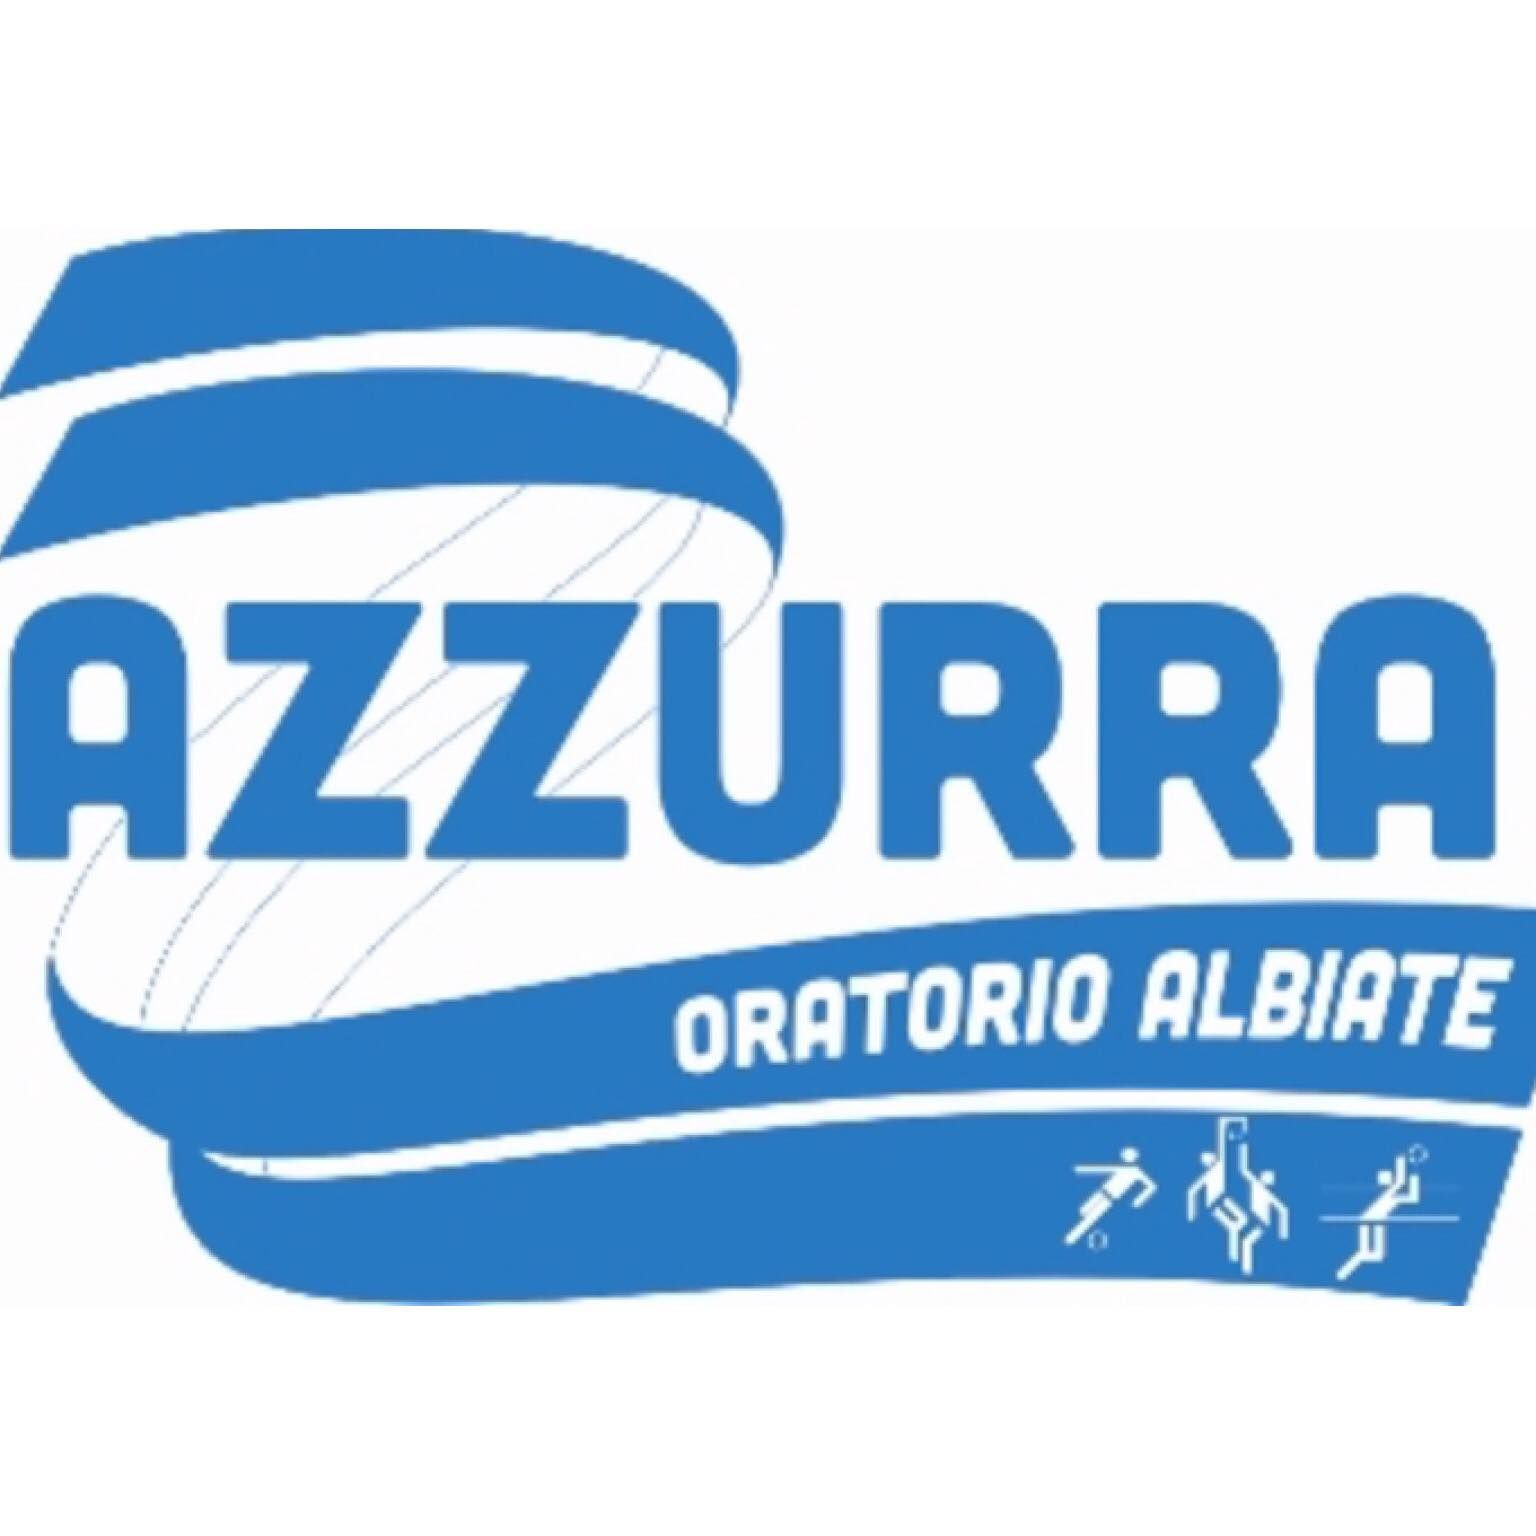 AZZURRA/ALBIATESE